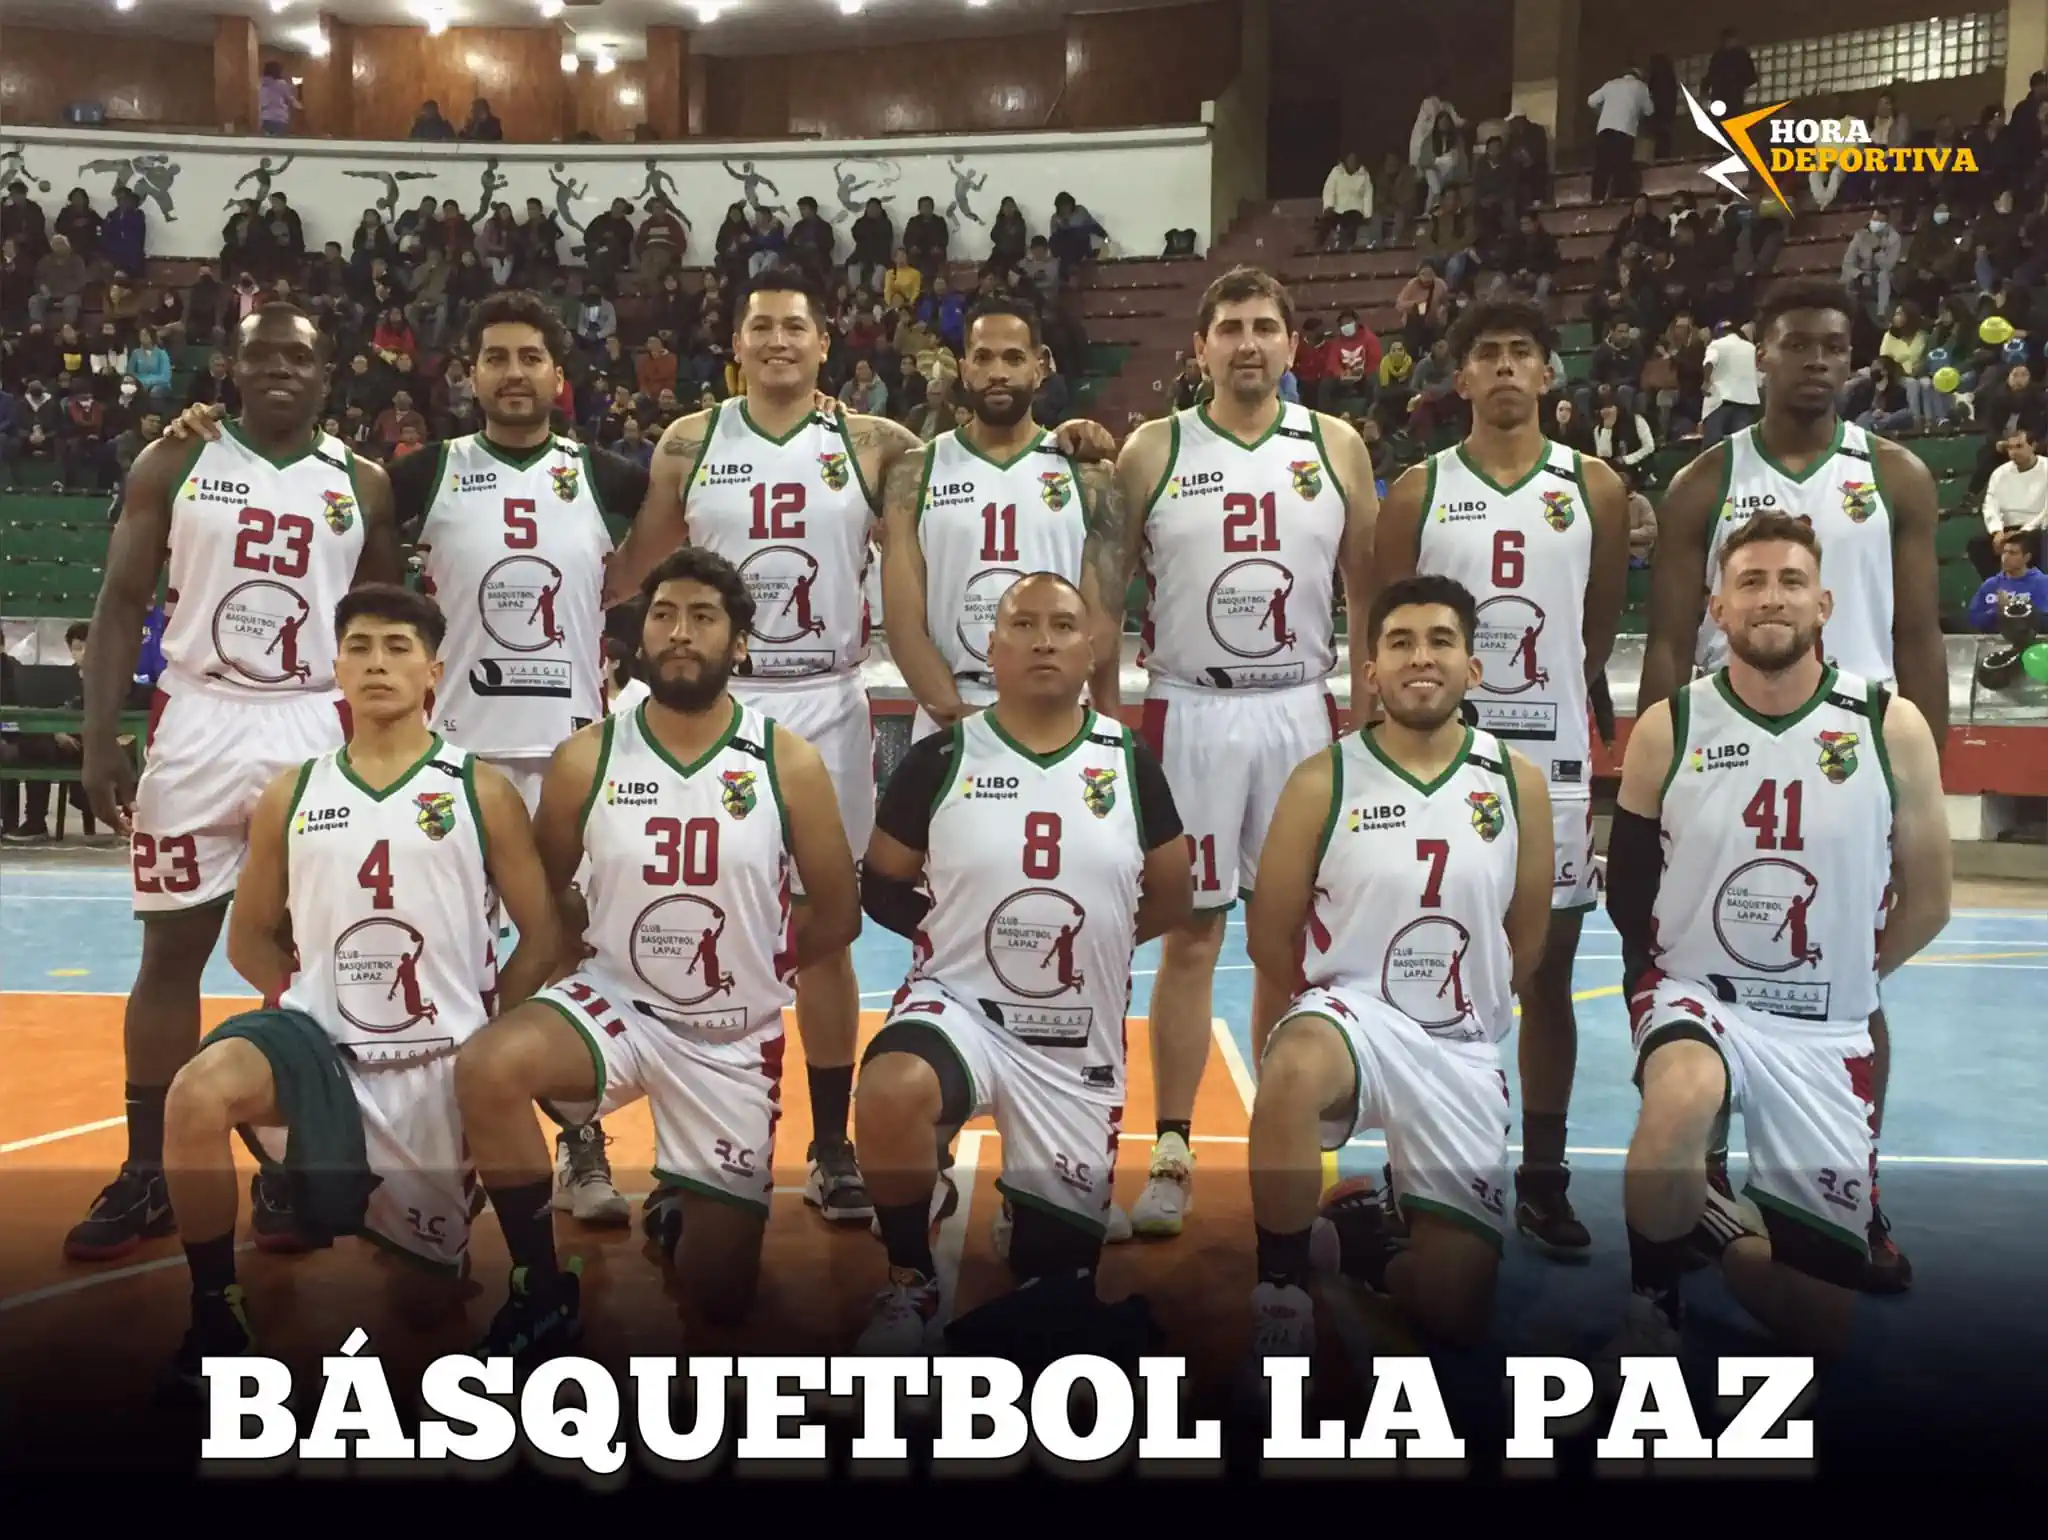 Club Básquetbol La Paz se estrena en la Libobásquet con una victoria más que sufrida ante Carl A-Z (80-85)